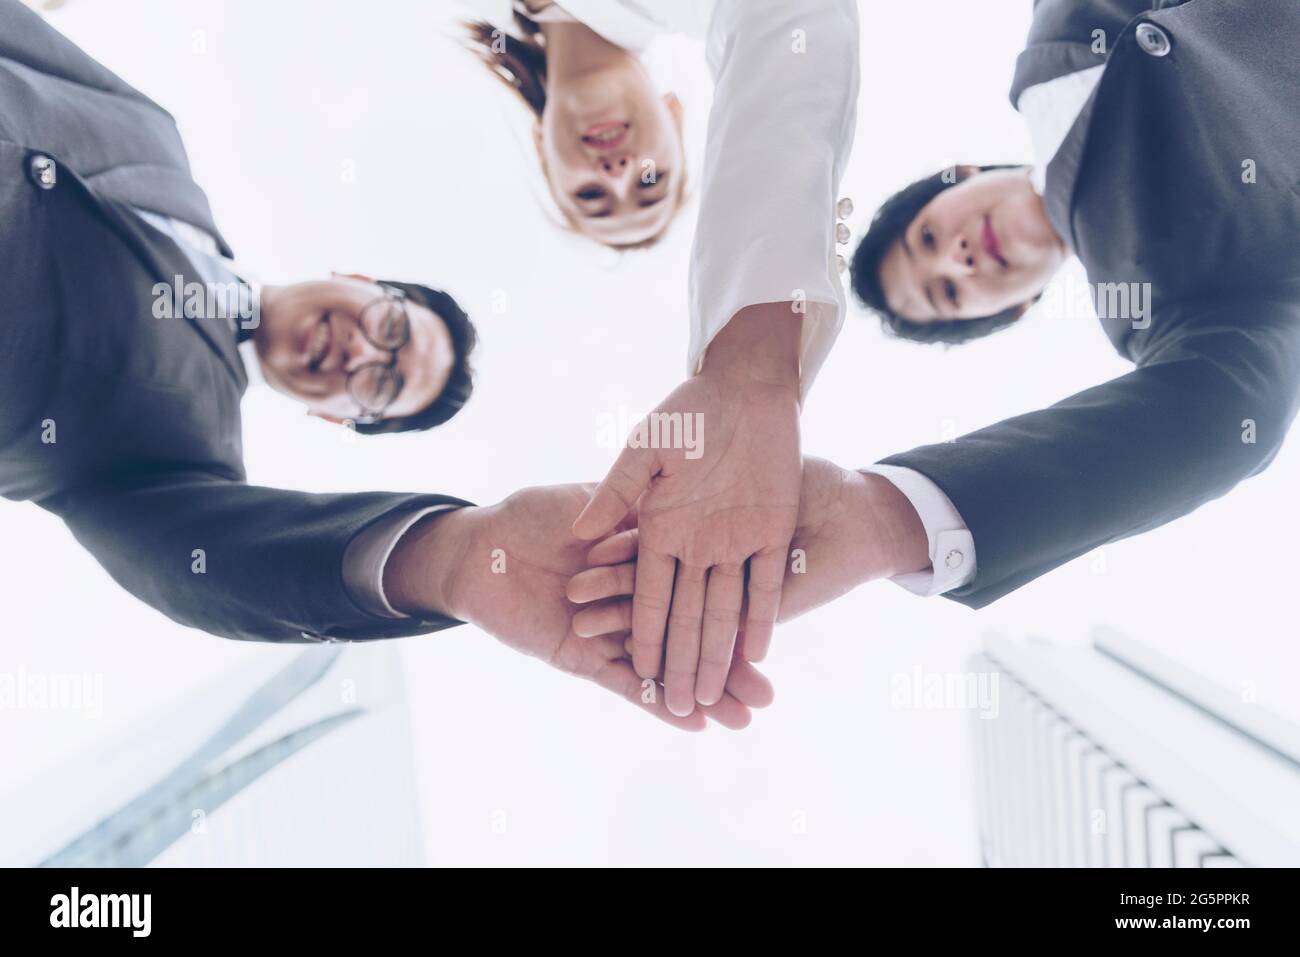 Konzept Teamwork Together. Gruppe von Menschen mit fünf verschiedenen Unterschieden, die auf Sendung sind, um die Stärke des Tag-Teams zu begrüßen. Multiethnische Gruppen arbeiten zusammen. Vo Stockfoto